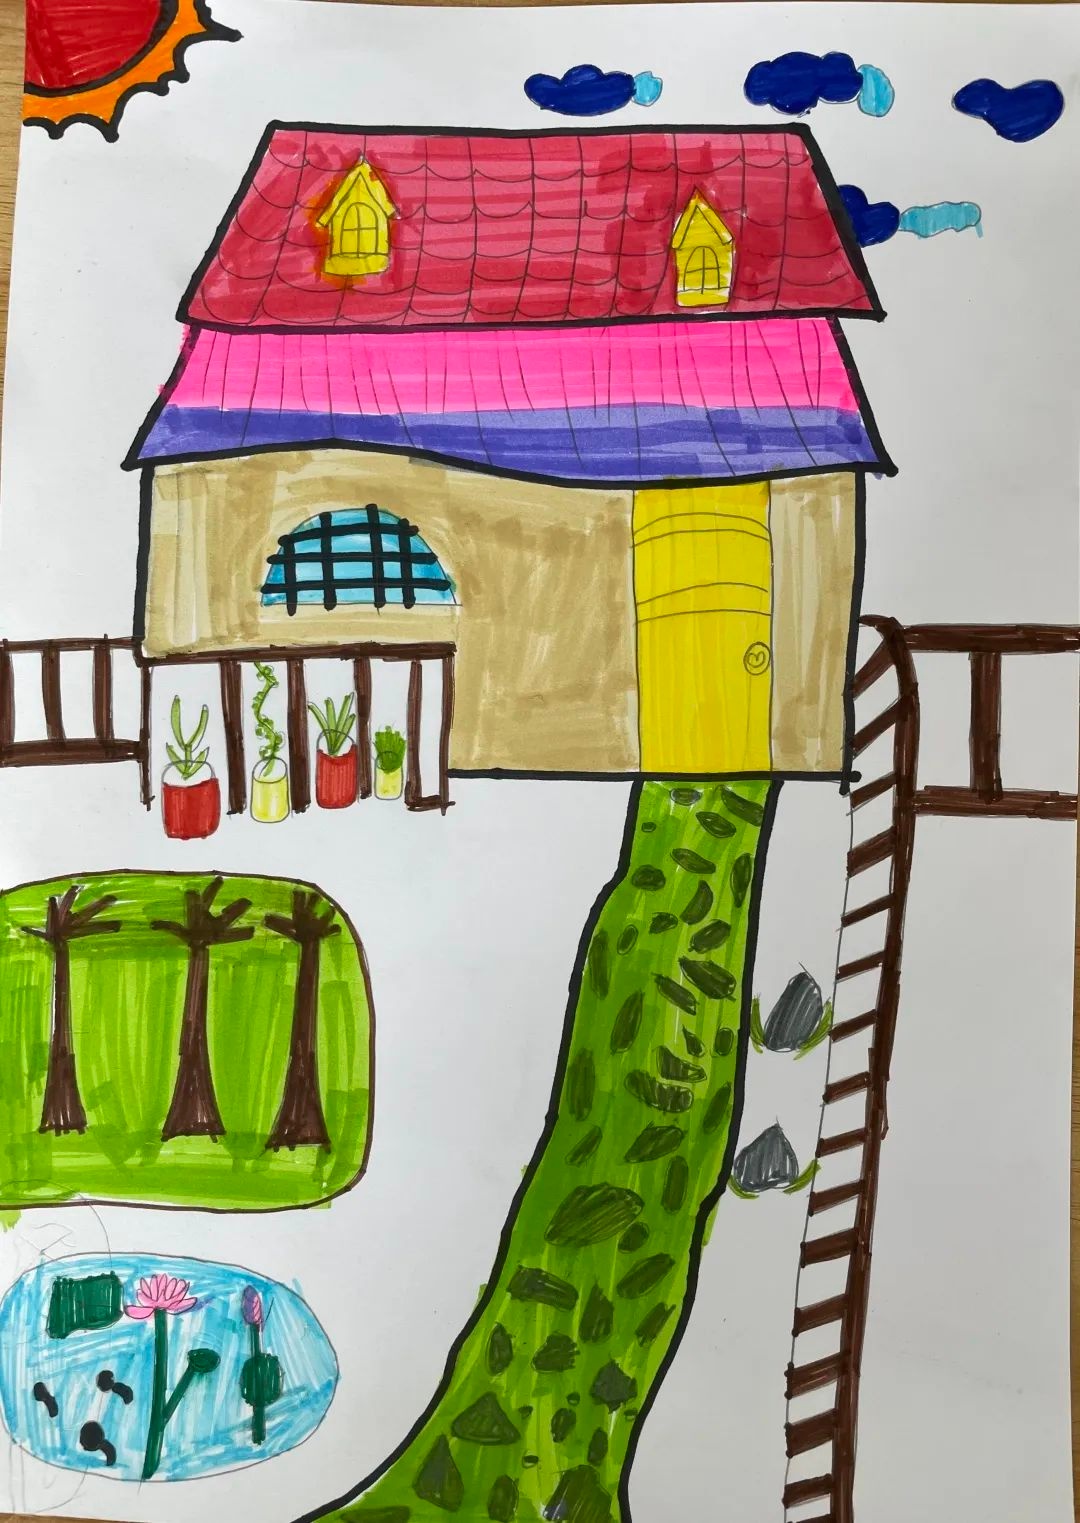 美丽庭院儿童画简图图片